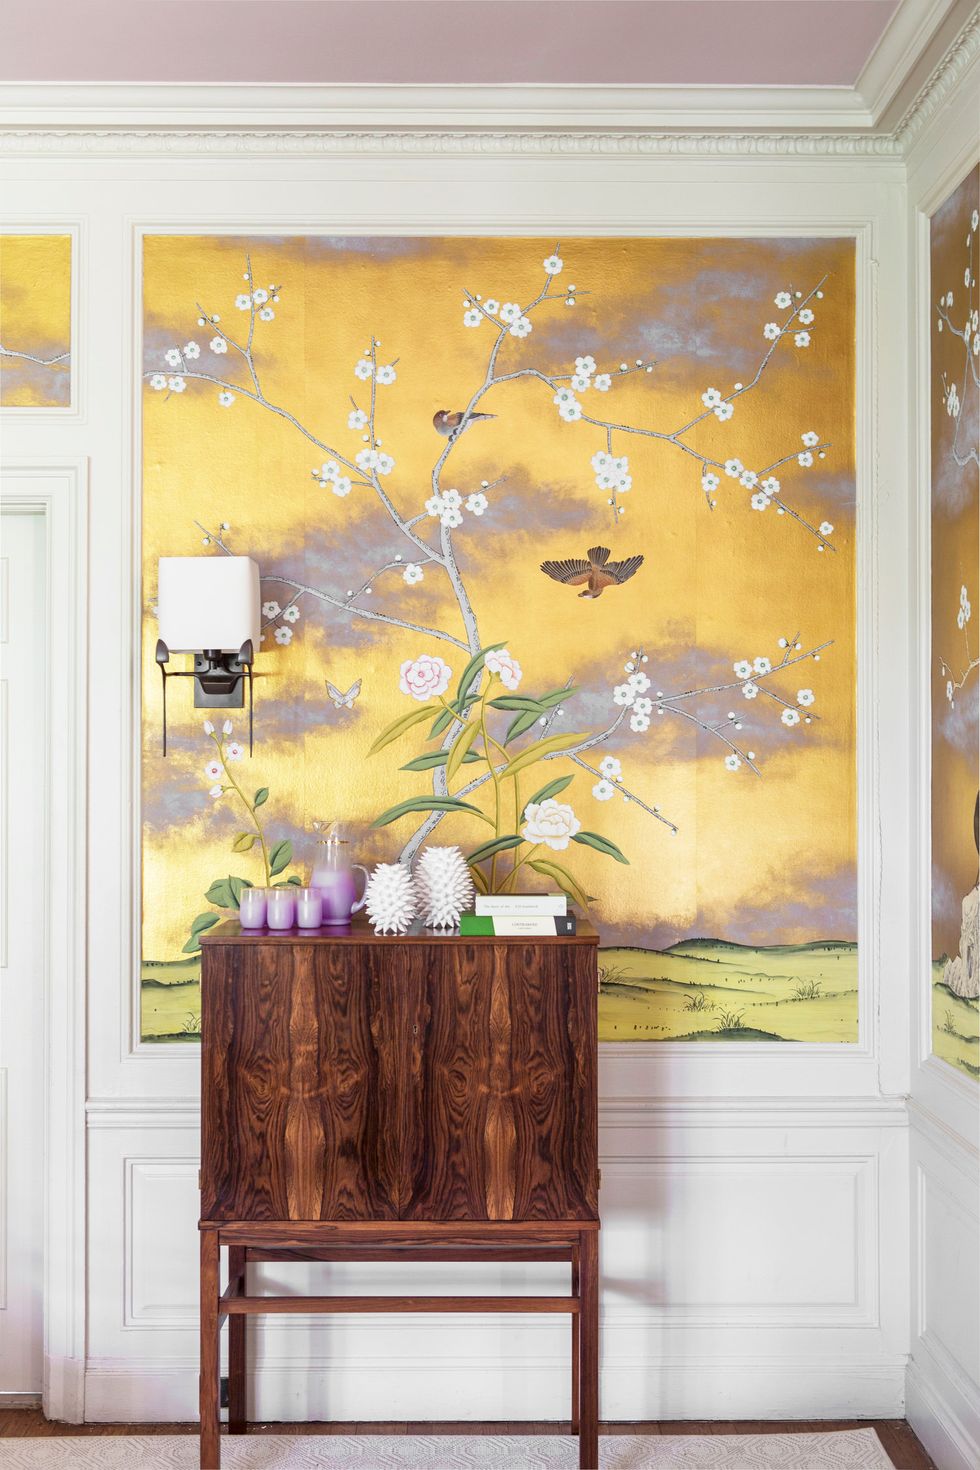 Hình ảnh hành lang nhà với tủ gỗ ấm áp, tranh tường màu vàng tím họa tiết chim hoa mùa xuân